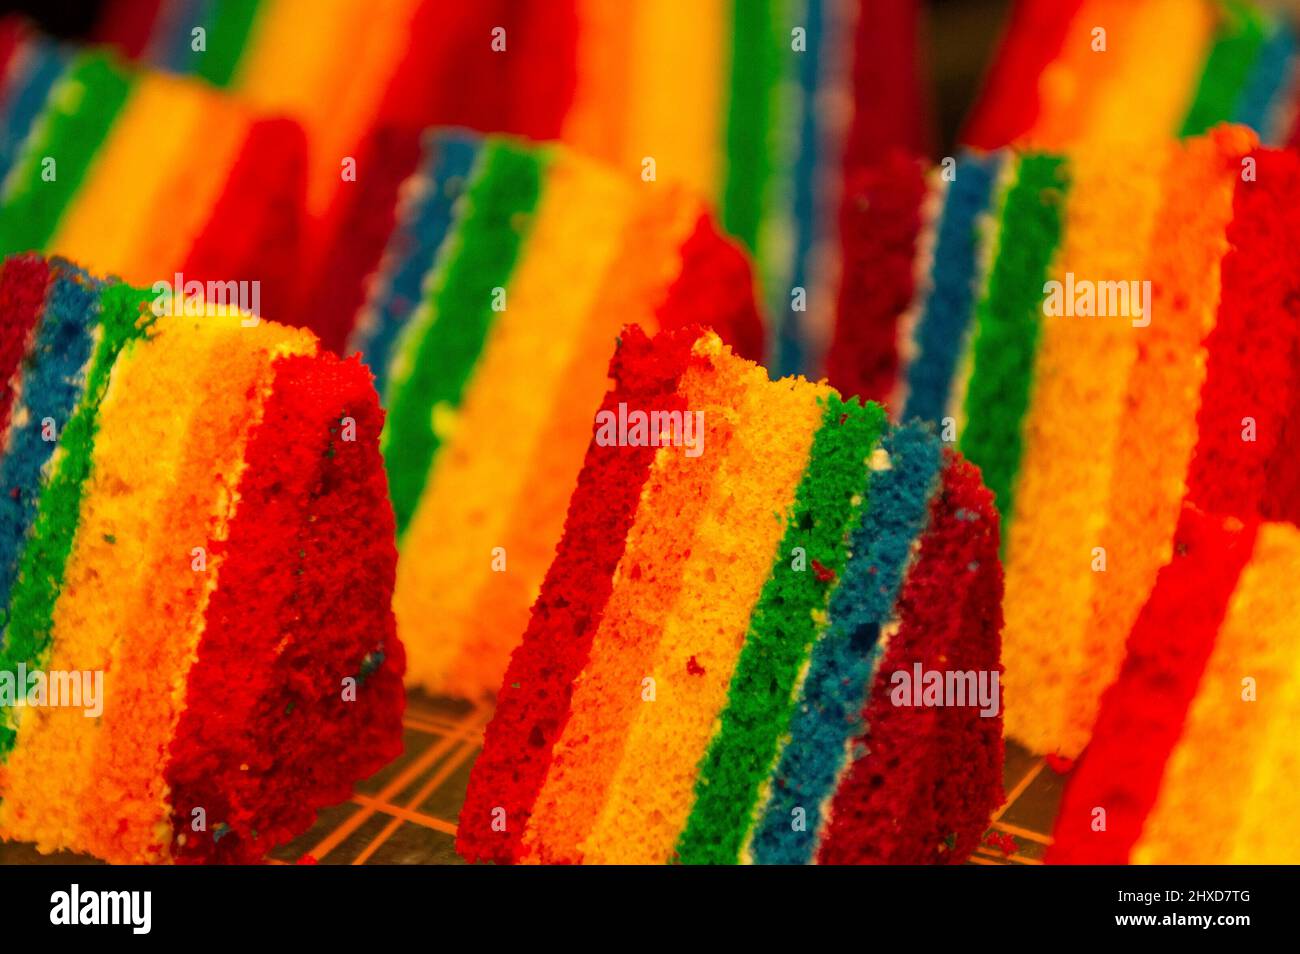 Primo piano biscotti colorati in colori arcobaleno, Singapore Foto Stock